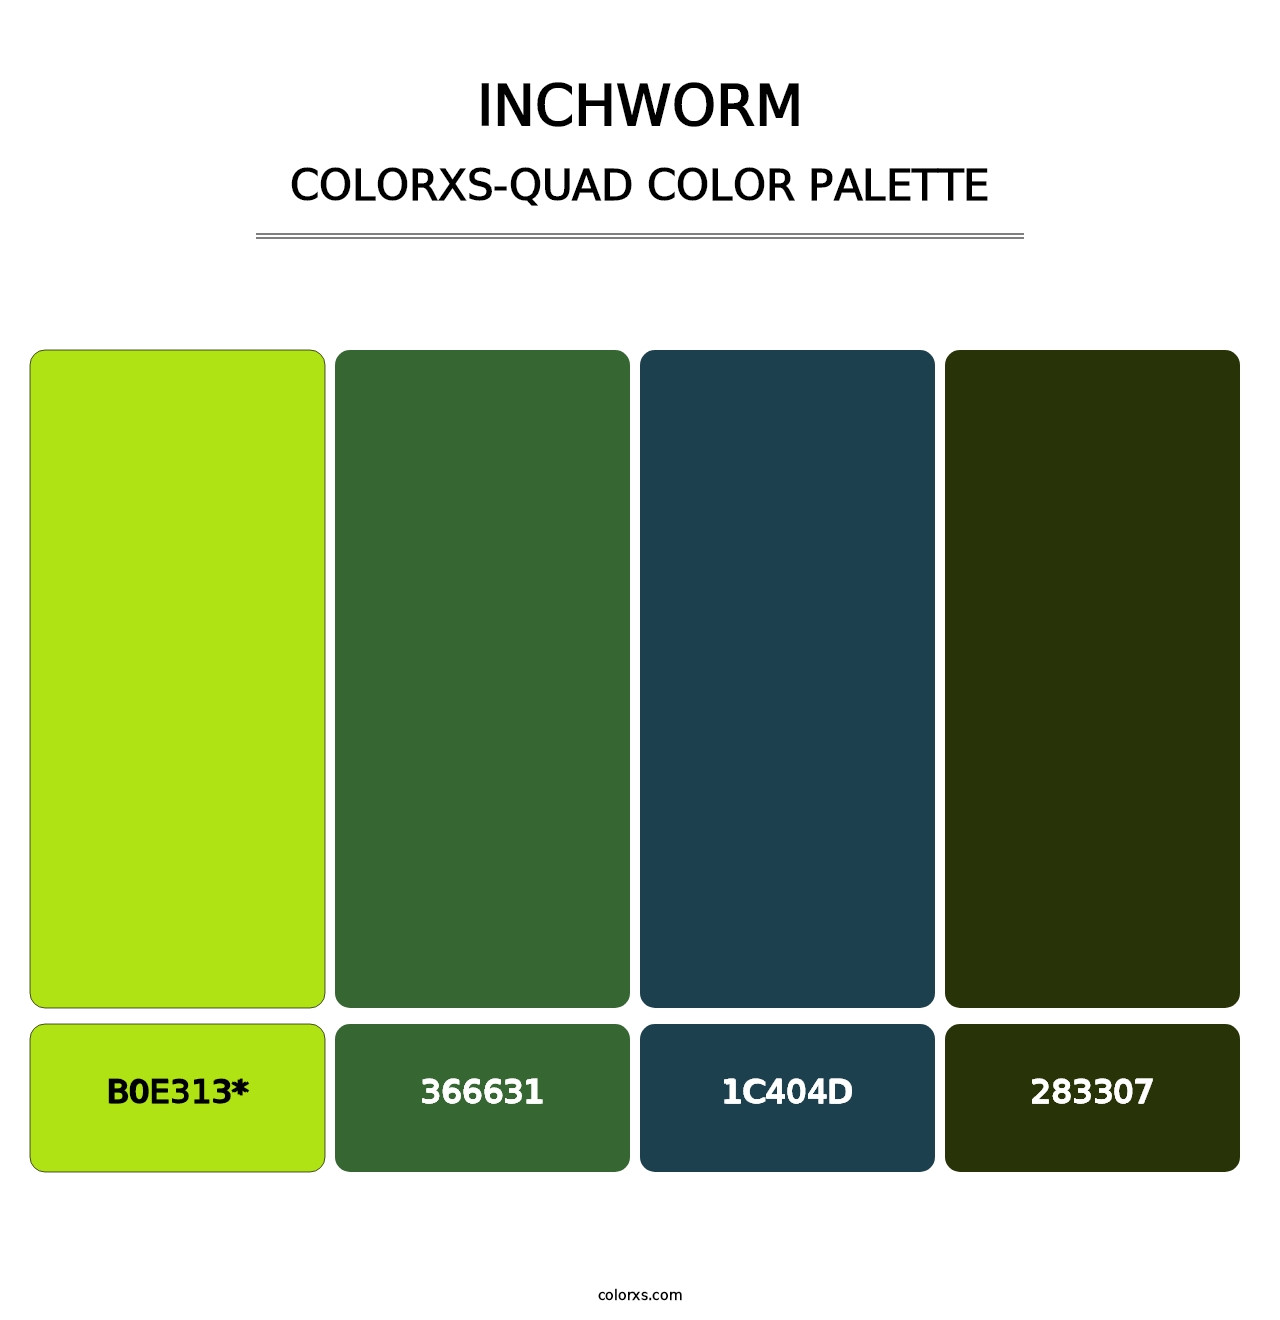 Inchworm - Colorxs Quad Palette